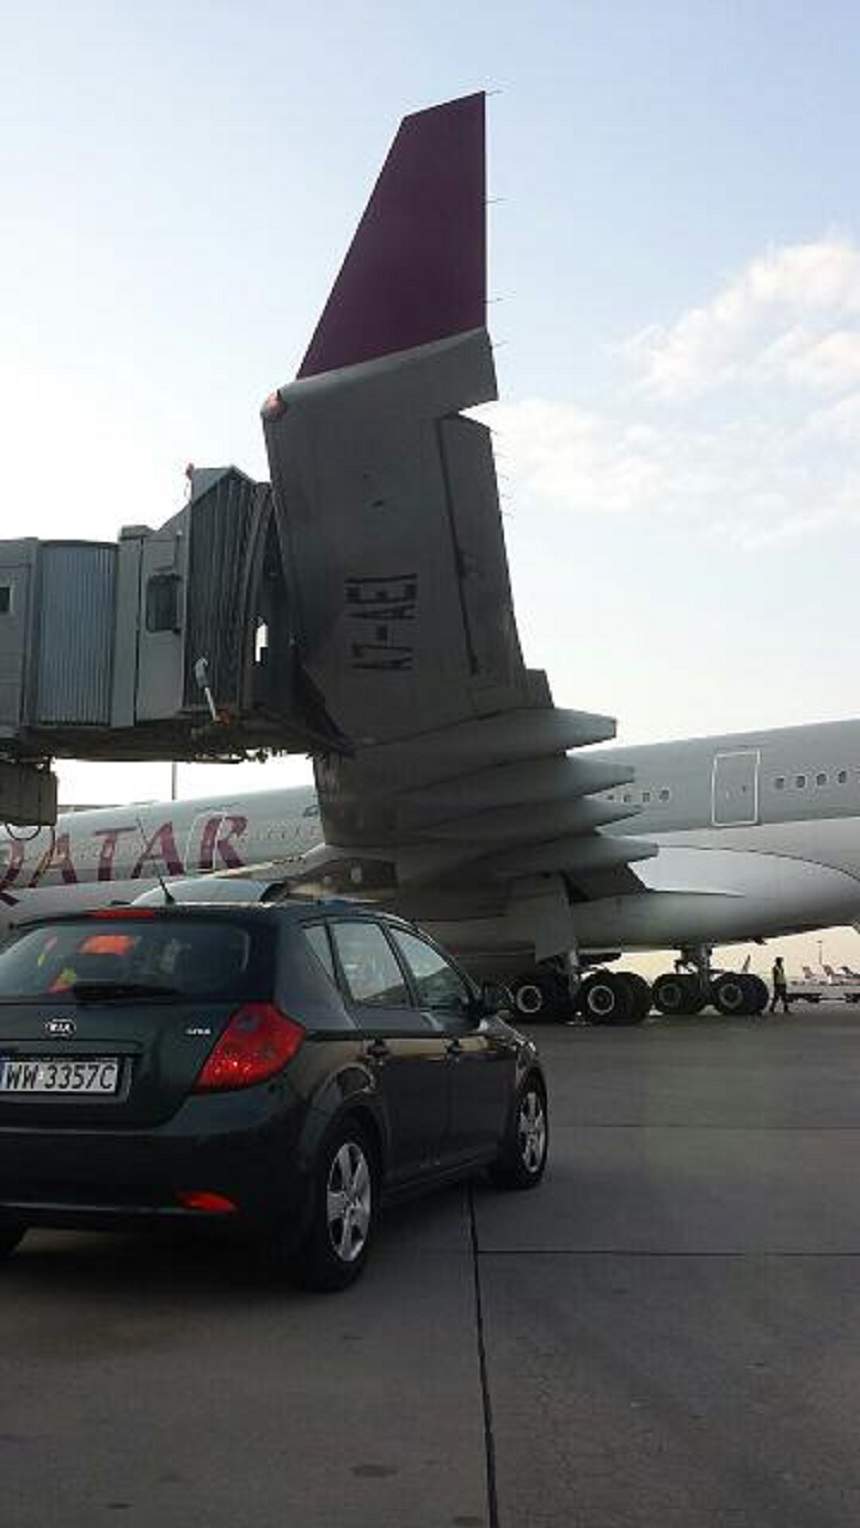 FOTO / PANICĂ pe aeroport! La un pas de EXPLOZIE, după ce un avion a lovit cu aripa podul de legătură